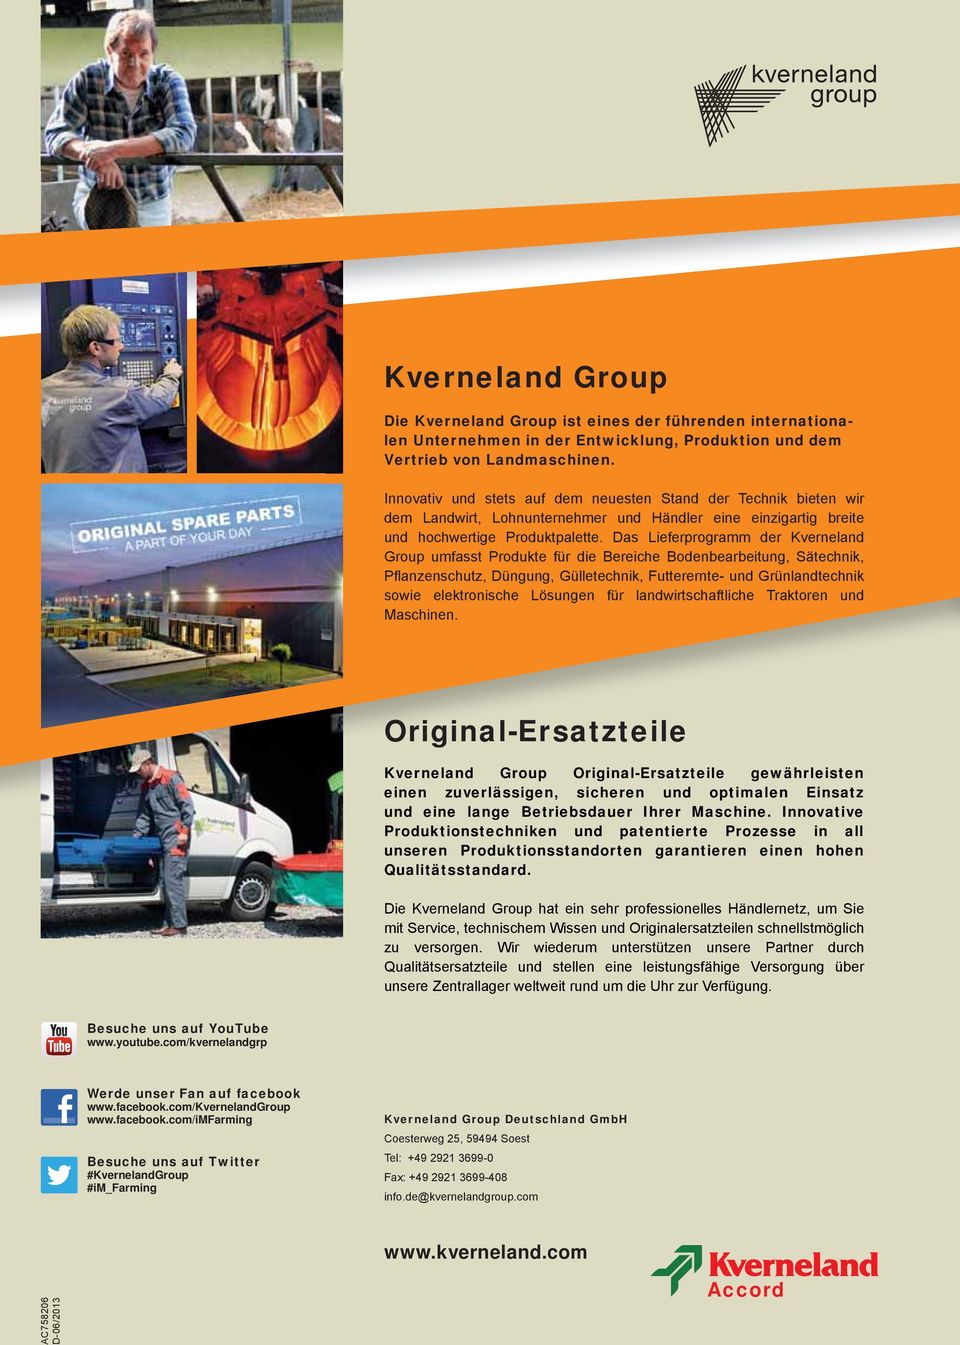 Das Lieferprogramm der Kverneland Group umfasst Produkte für die Bereiche Bodenbearbeitung, Sätechnik, Pflanzenschutz, Düngung, Gülletechnik, Futterernte- und Grünlandtechnik sowie elektronische